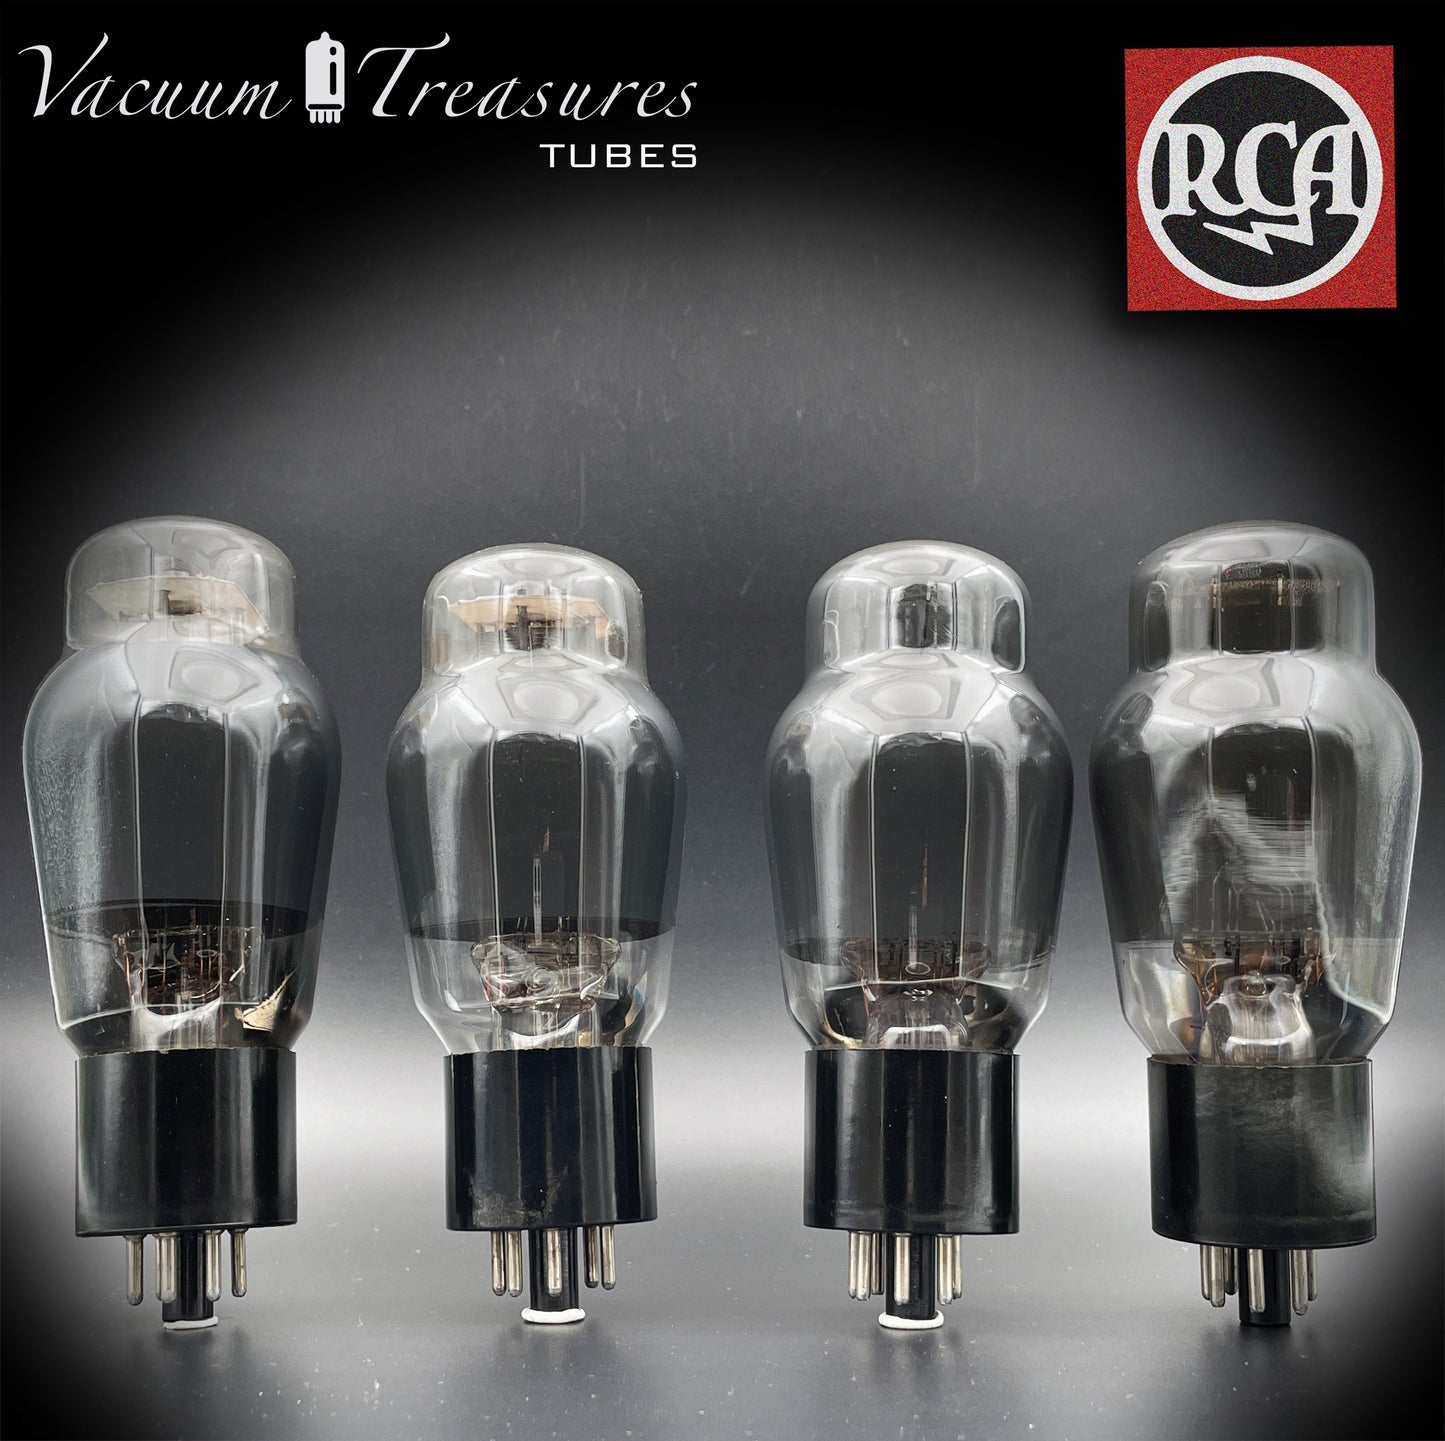 Placas negras RCA 6L6G, tubos cuadrados de vidrio ahumado a juego, fabricados en EE. UU.